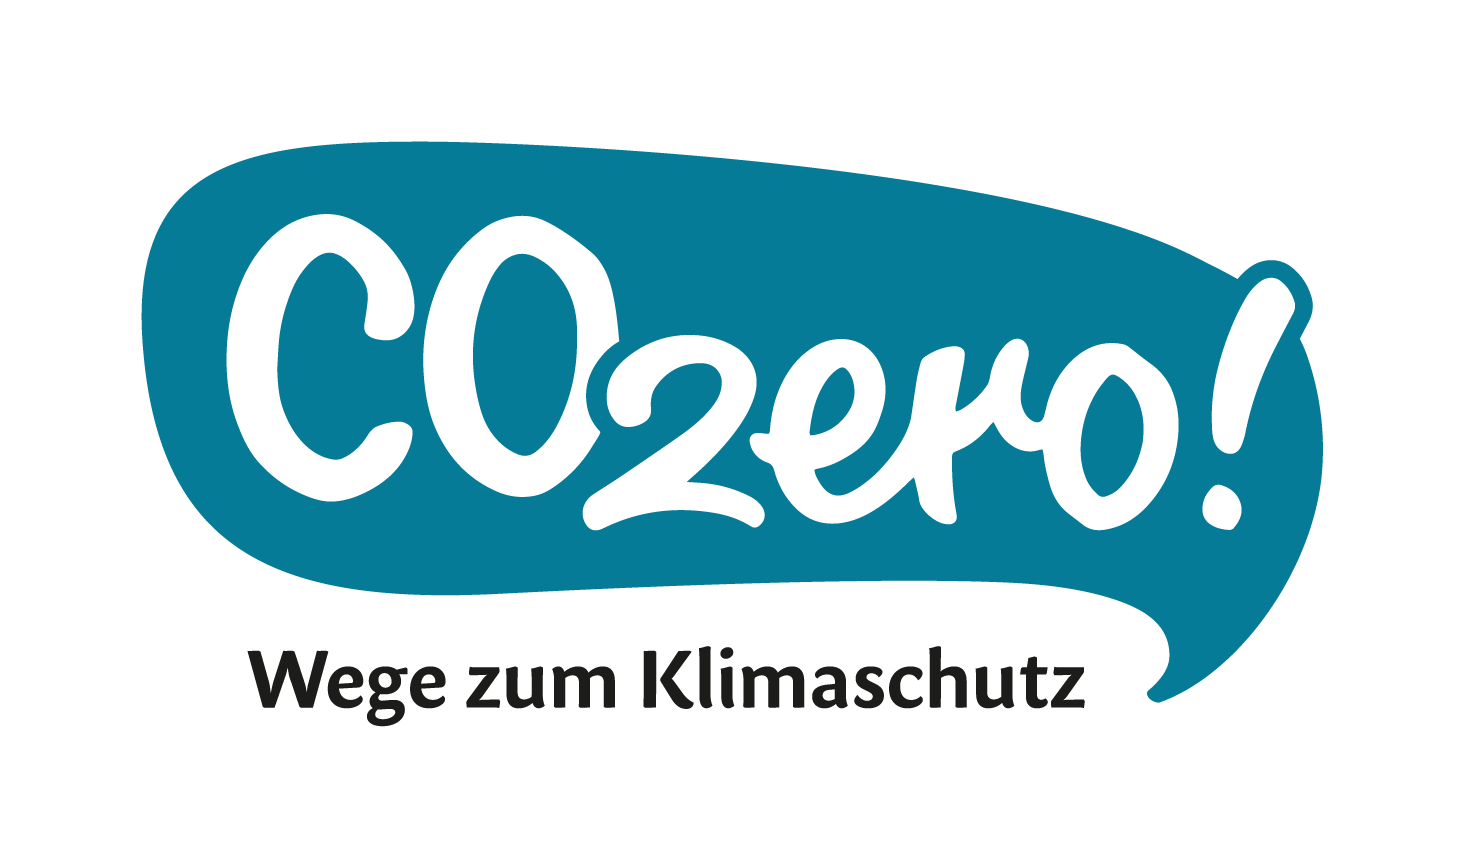 CO2ero